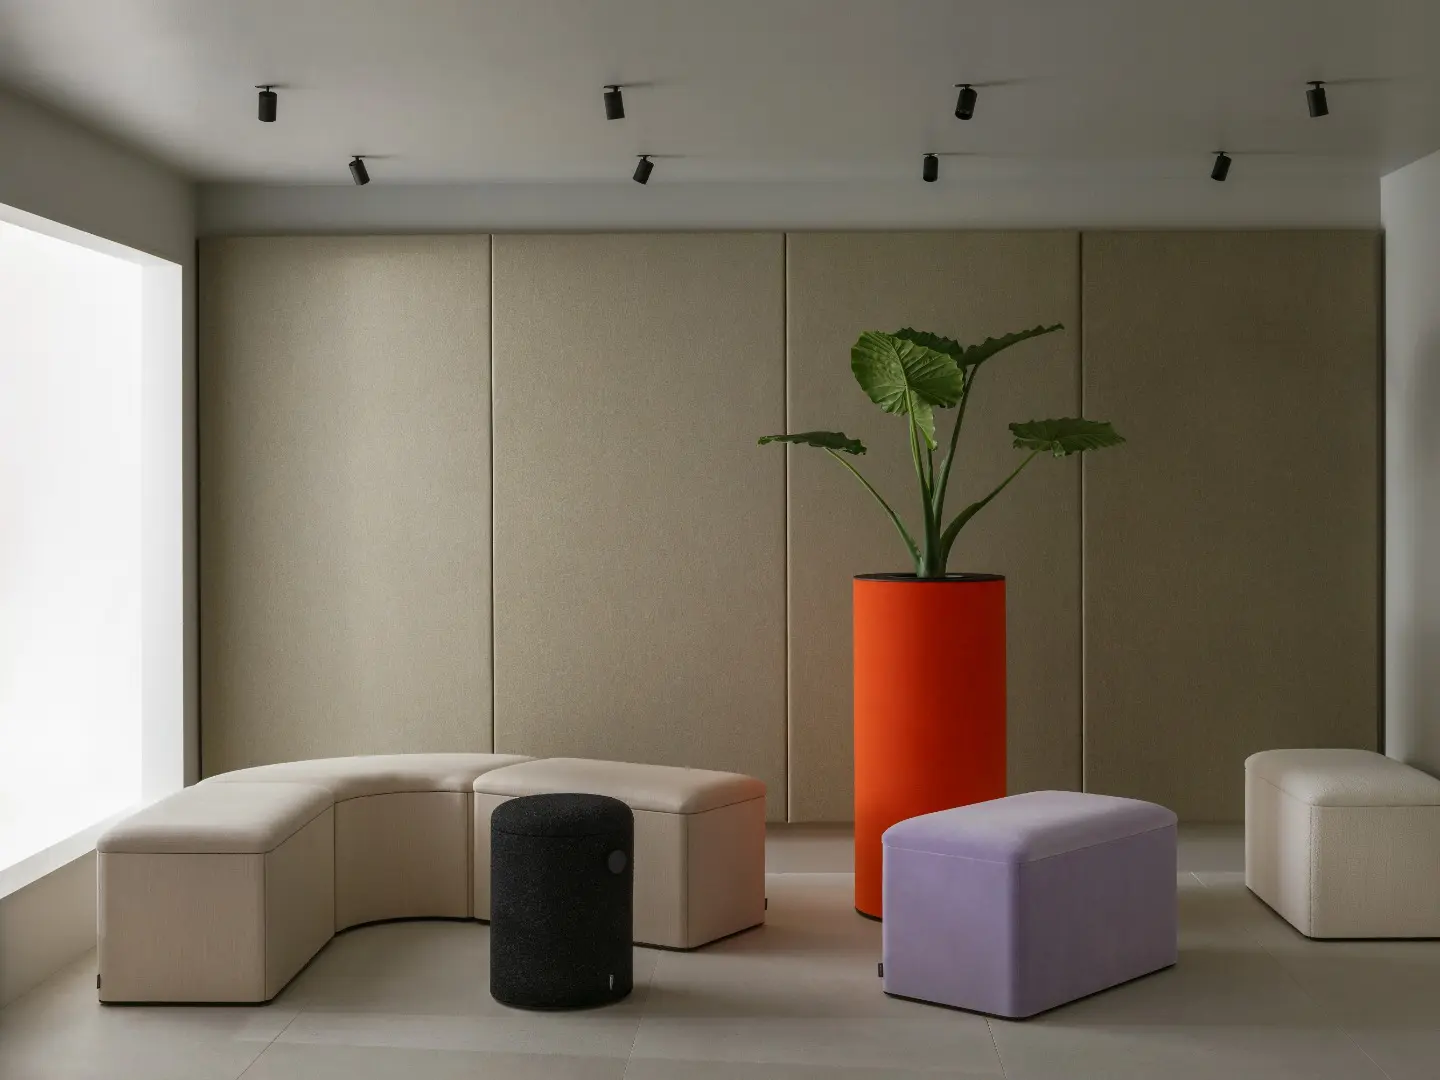 dB Modular sofa by Thomas Bernstrand for Abstracta